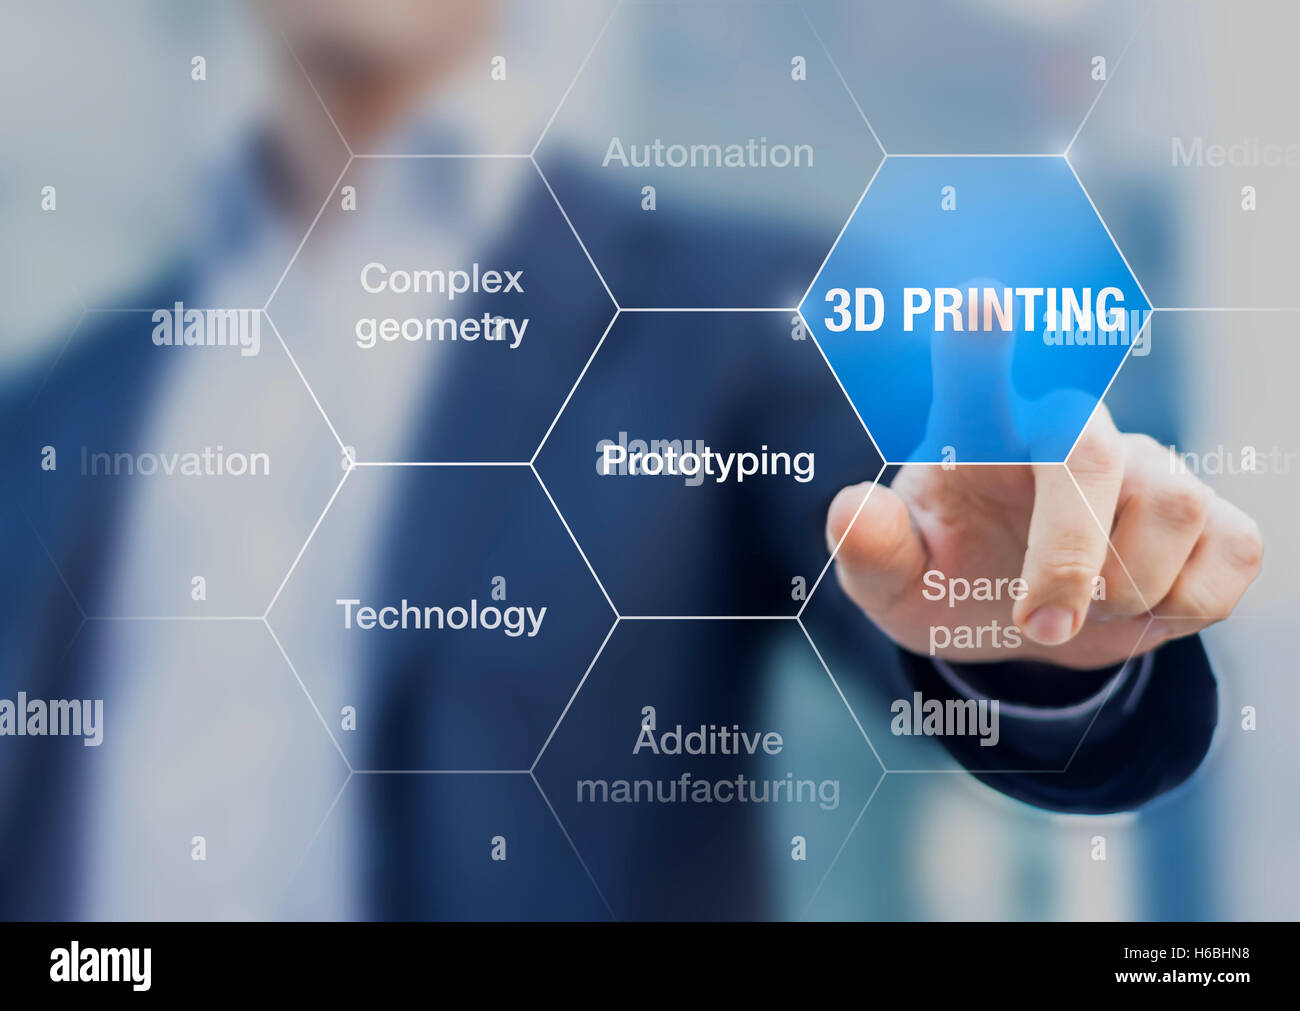 Concept à propos de l'impression 3D qui est une technologie de fabrication additive innovante pour le prototypage rapide Banque D'Images